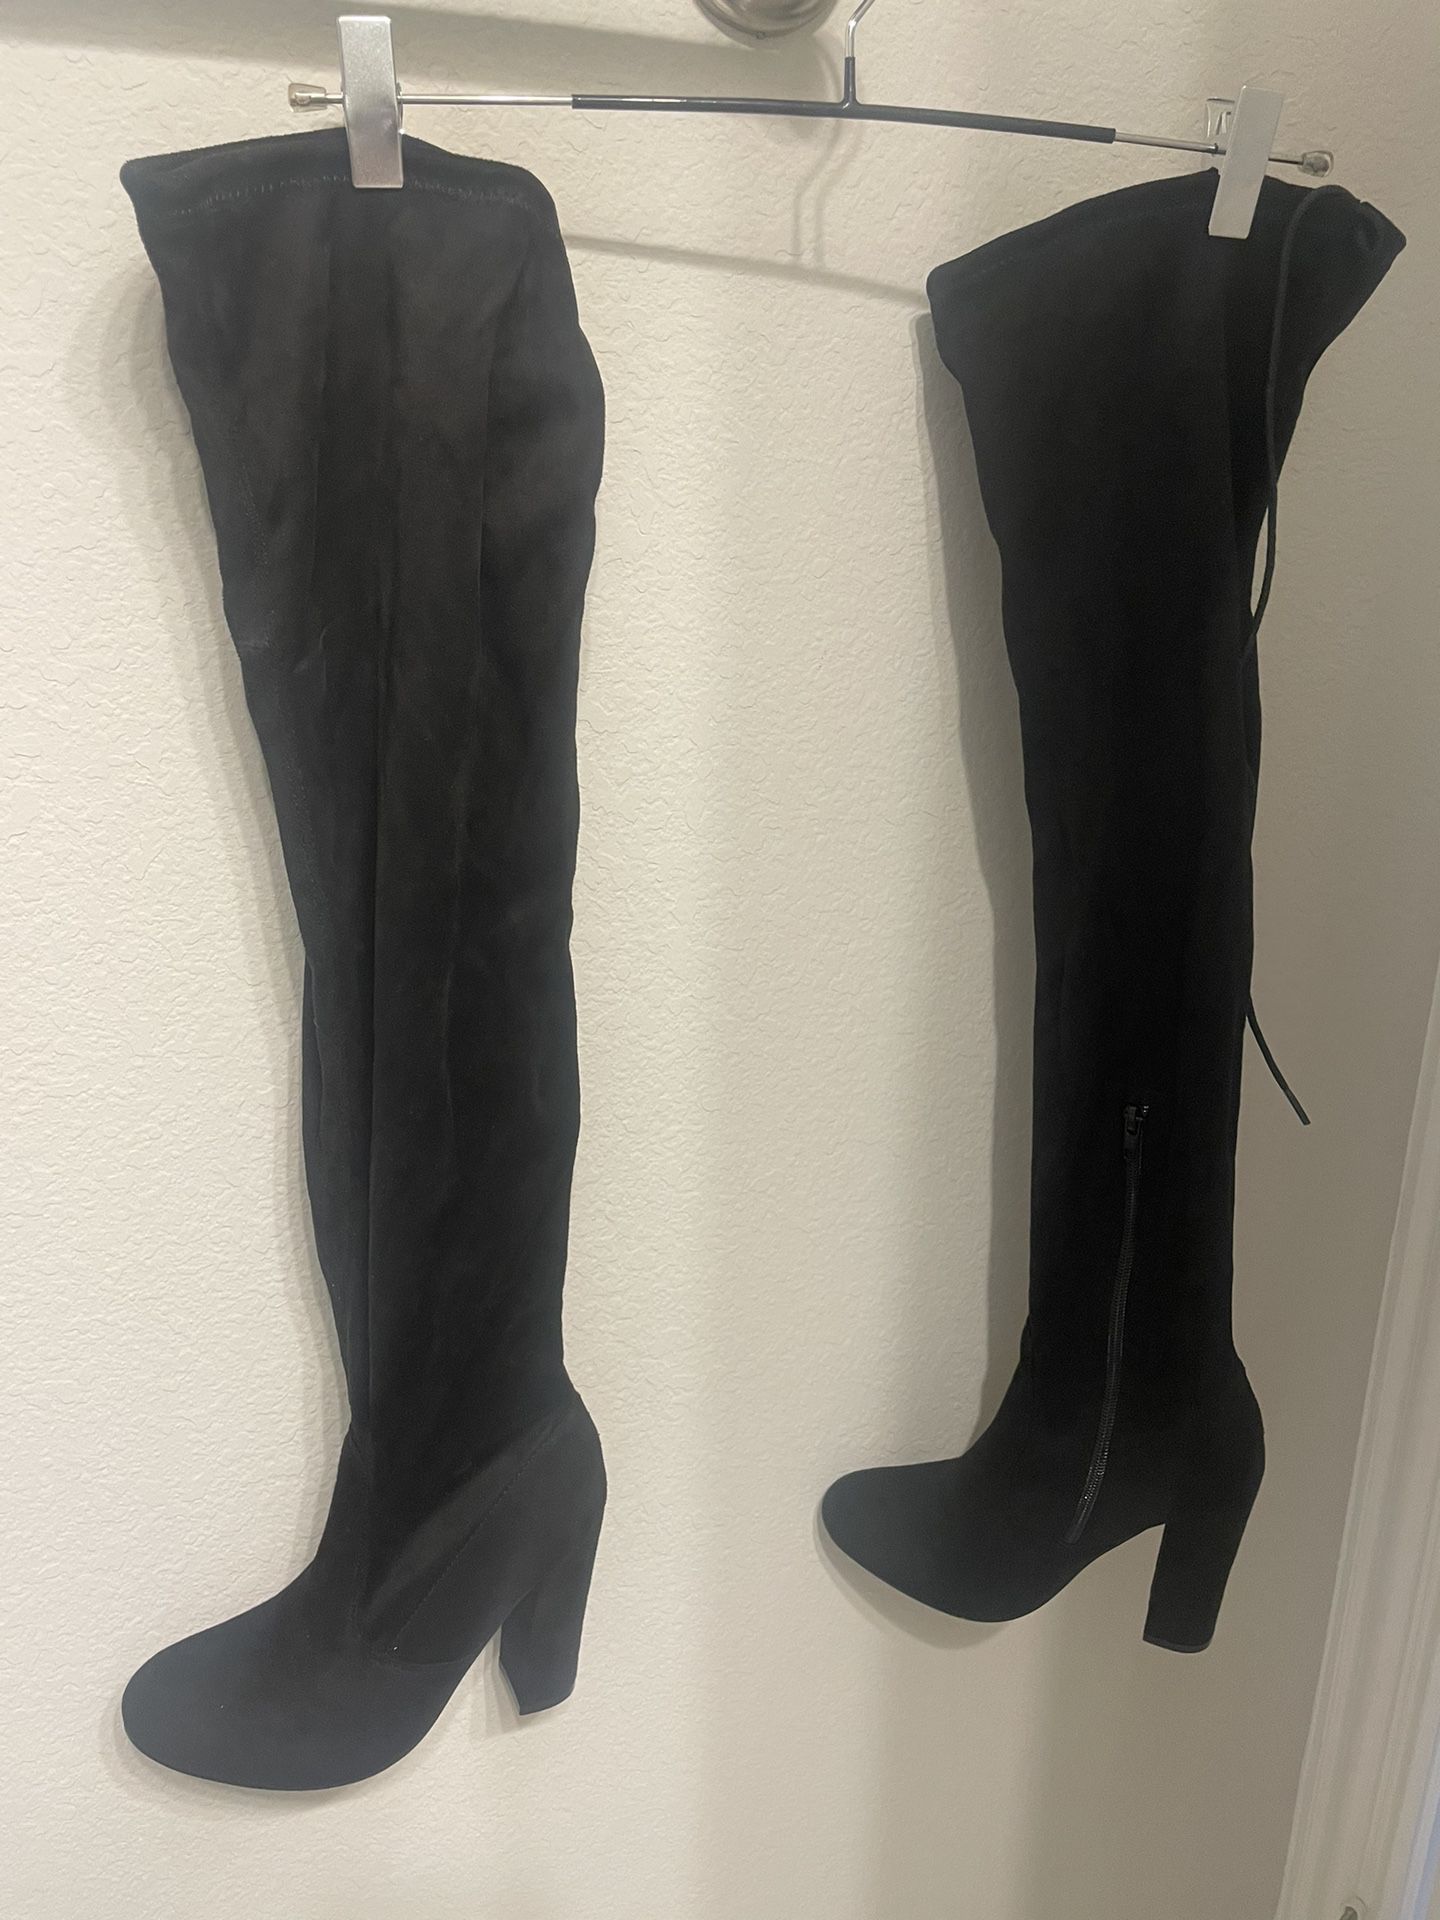 Rue 21 Knee High Black Heel Boots, Size 6 NWOT